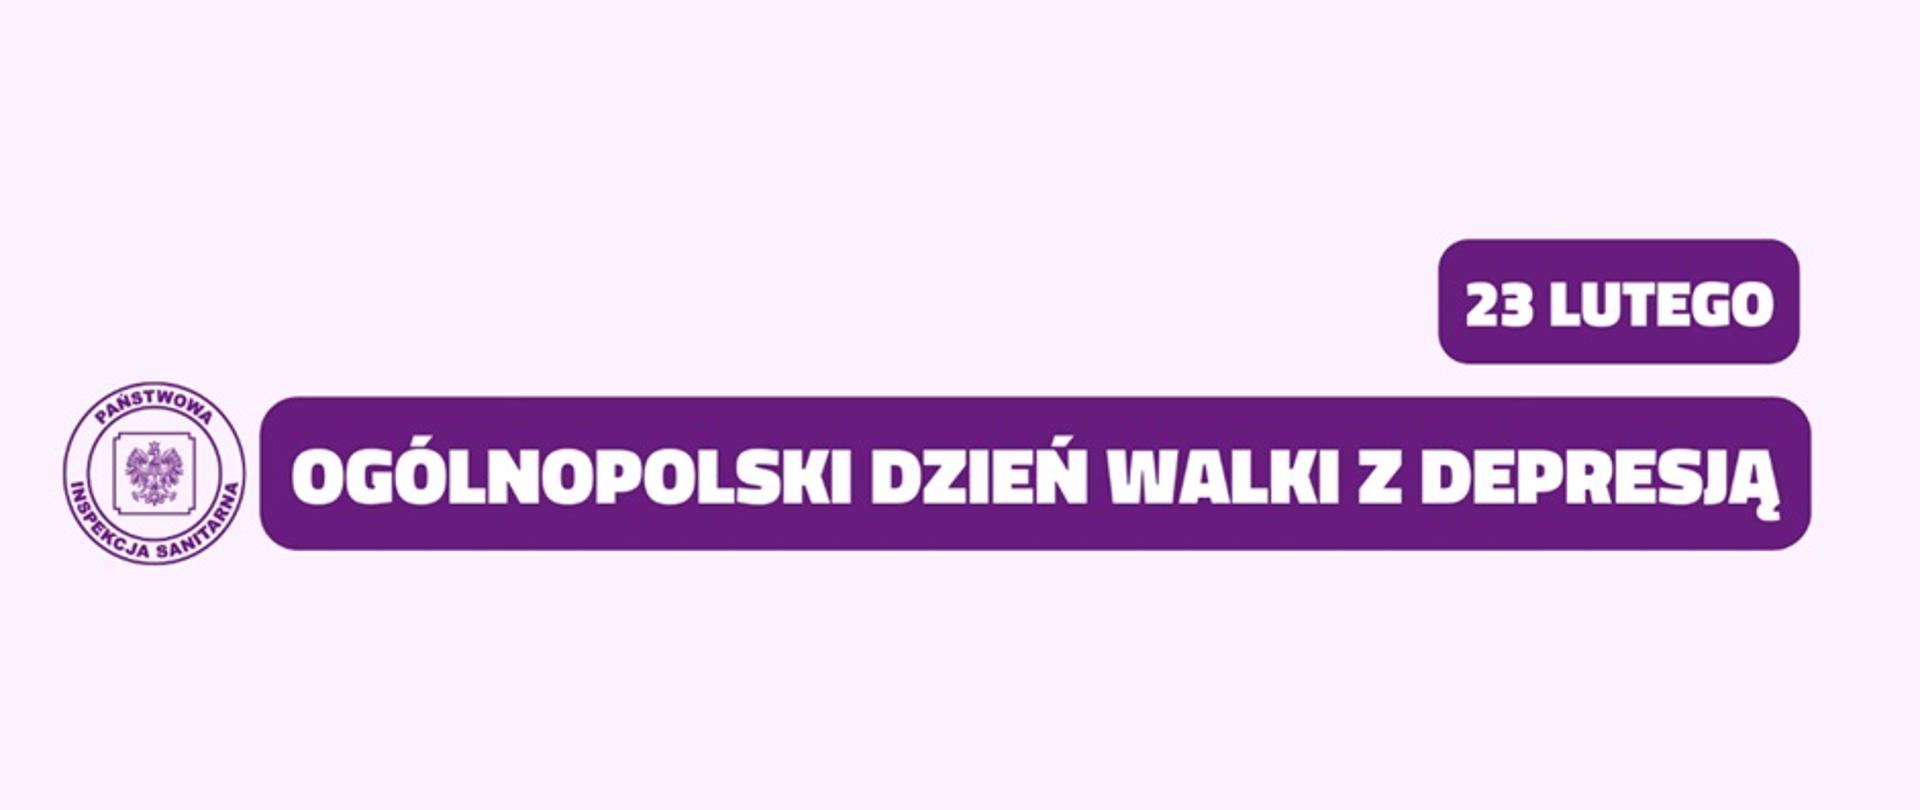 Na fioletowym tle widnieje napis "23 lutego Ogólnopolski Dzień Walki z Depresją". Po lewej stronie umieszczono logo Państwowej Inspekcji Sanitarnej.